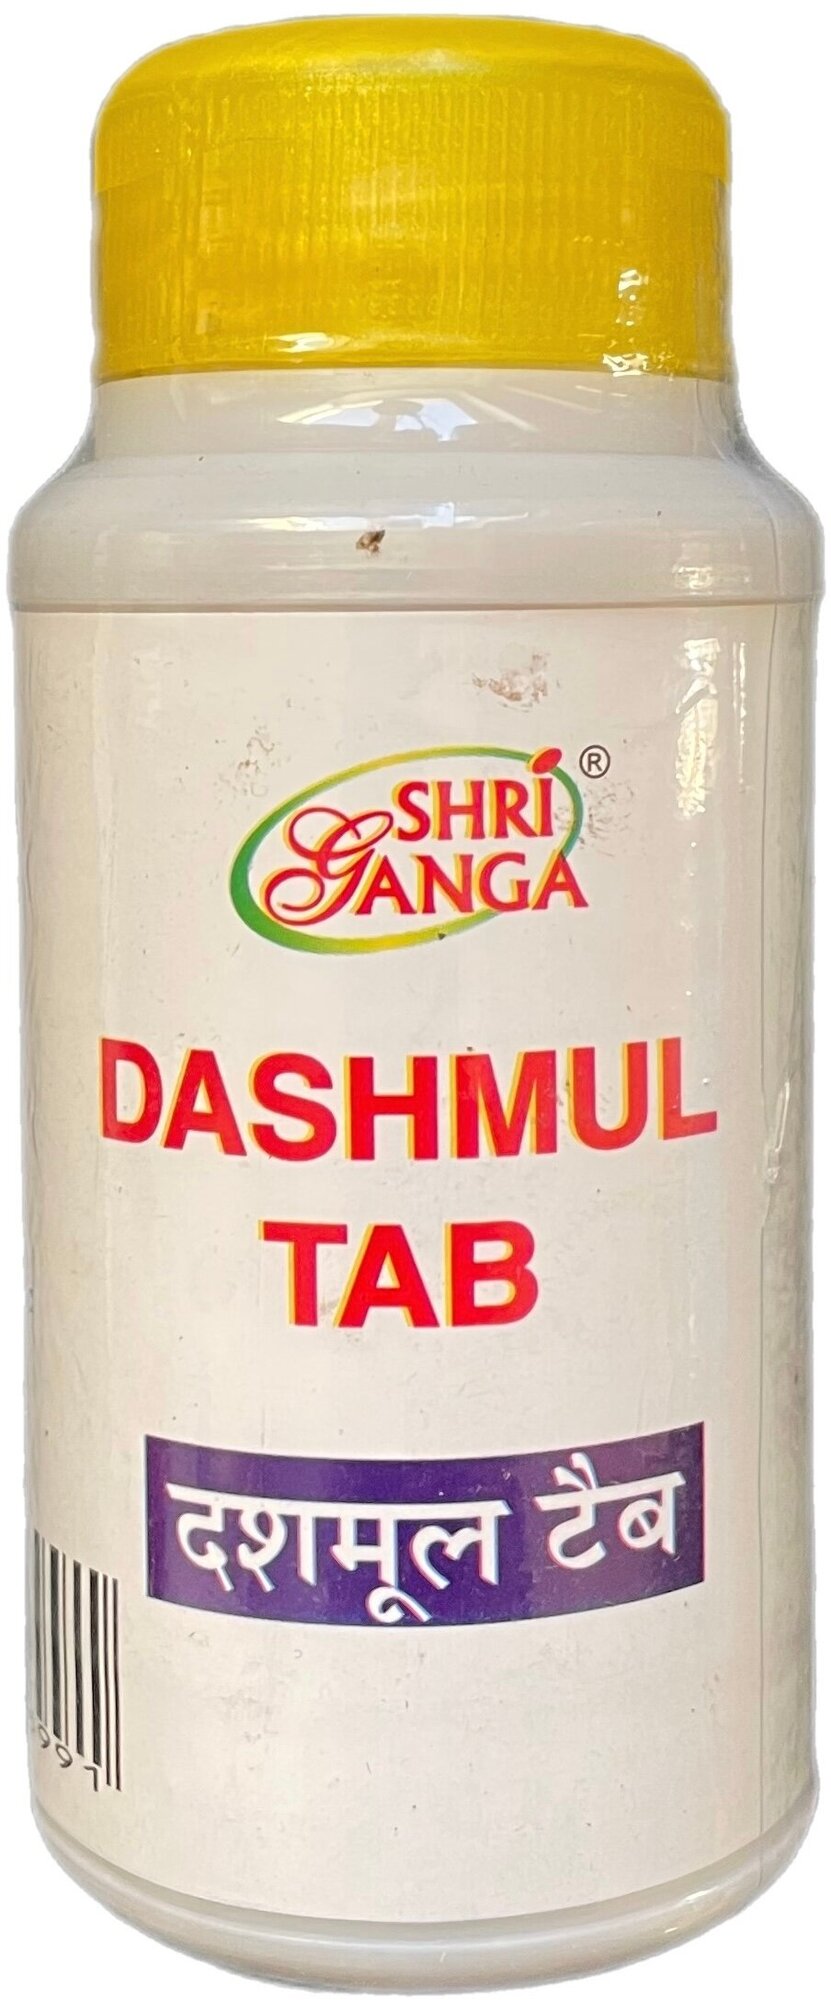 Дашмул Шри Ганга (Shri Ganga Dashmul tab) для лечения гормональных нарушений для очищения организма 100 таб.